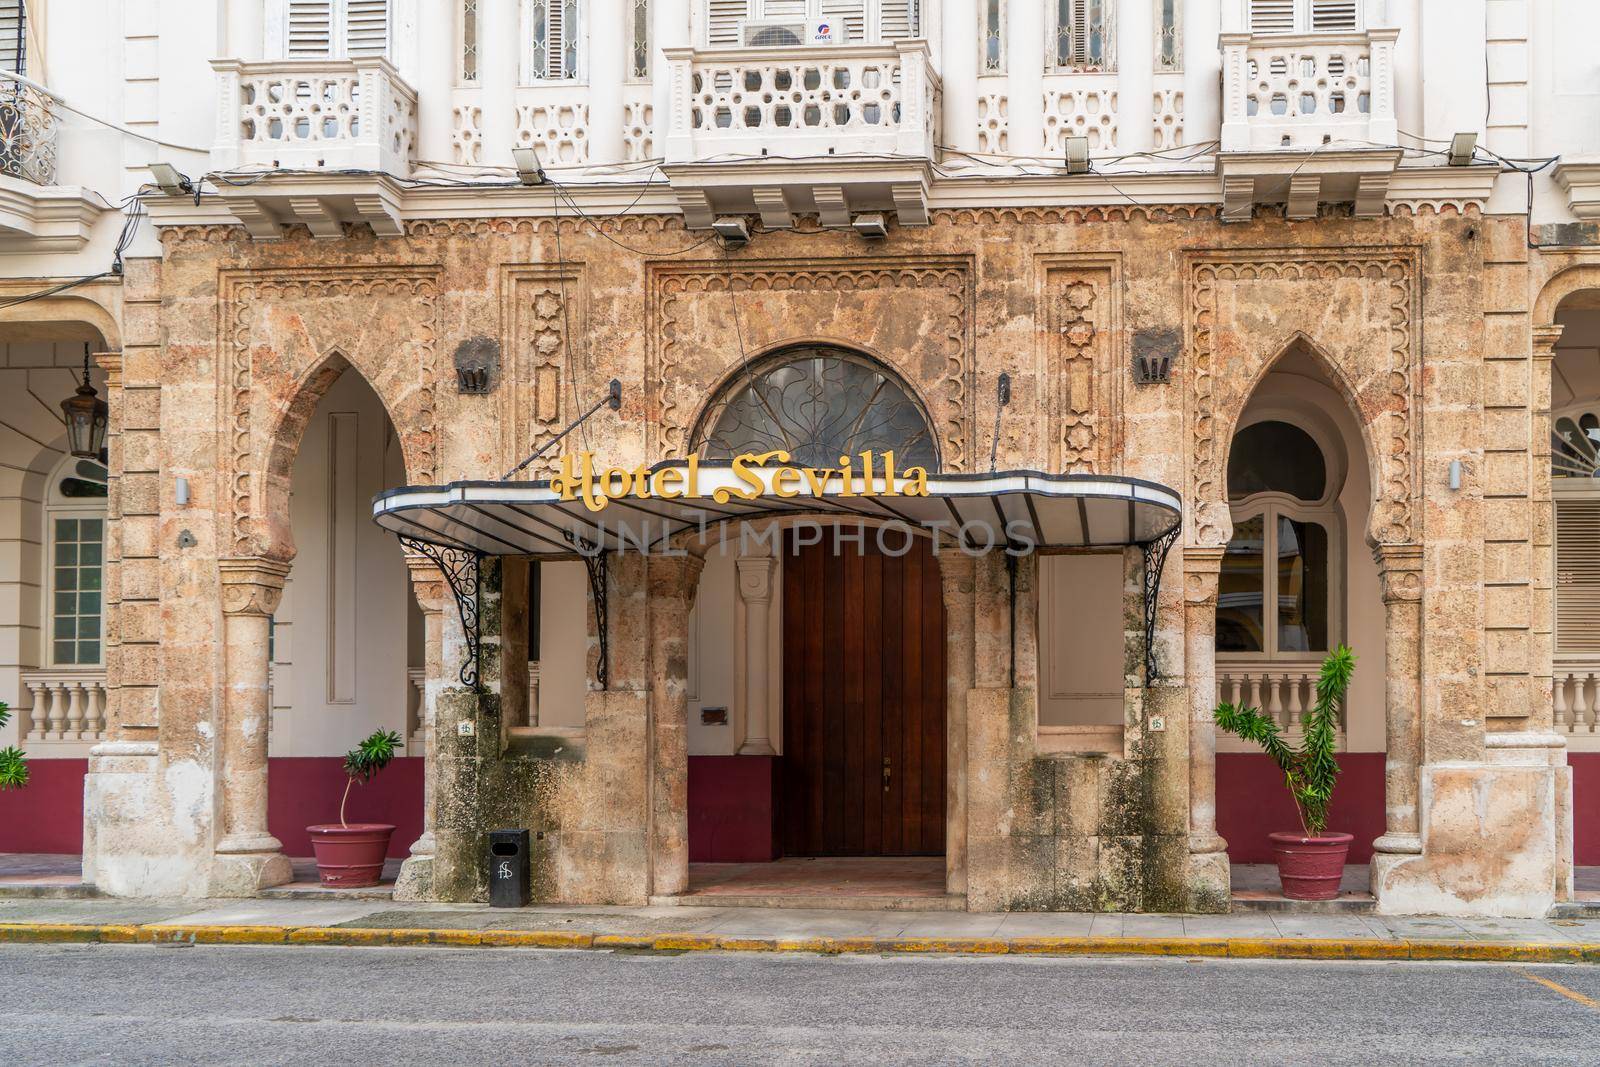 Hotel Sevilla by jrivalta